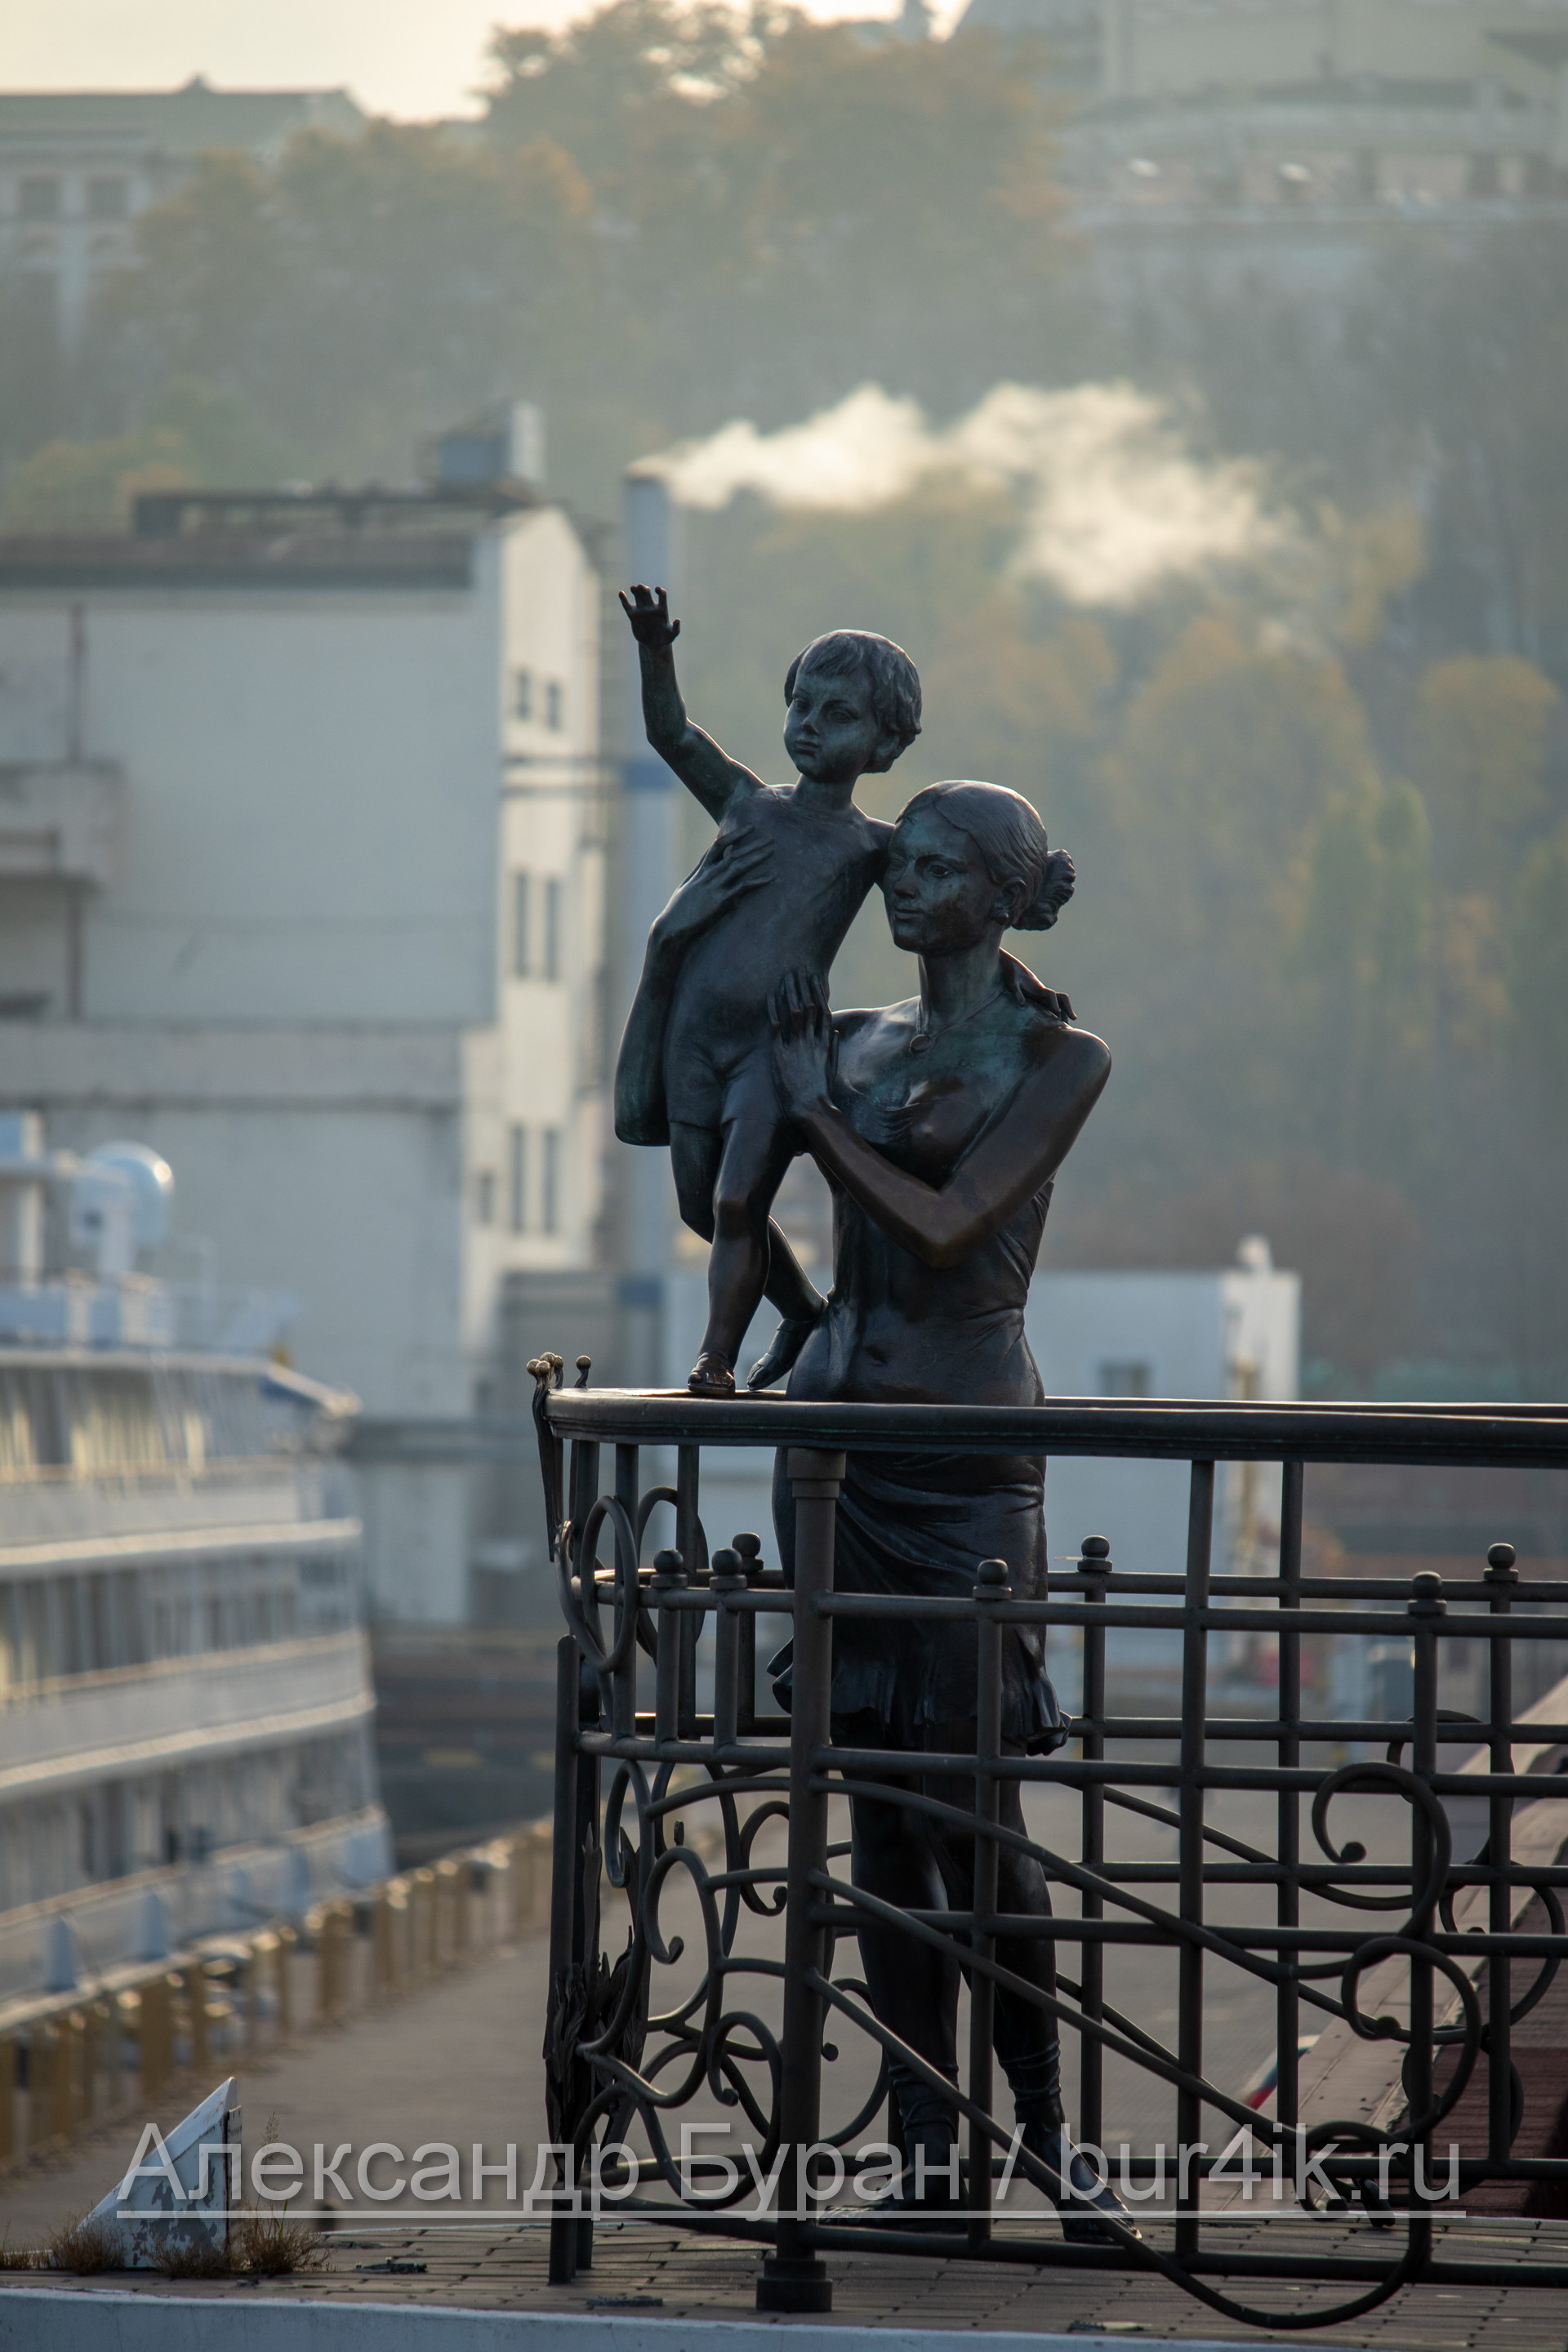 Скульптура женщины и ребенка, попрощаться с моряком на территории морского порта - Украина, Одесса, 09,11,2019